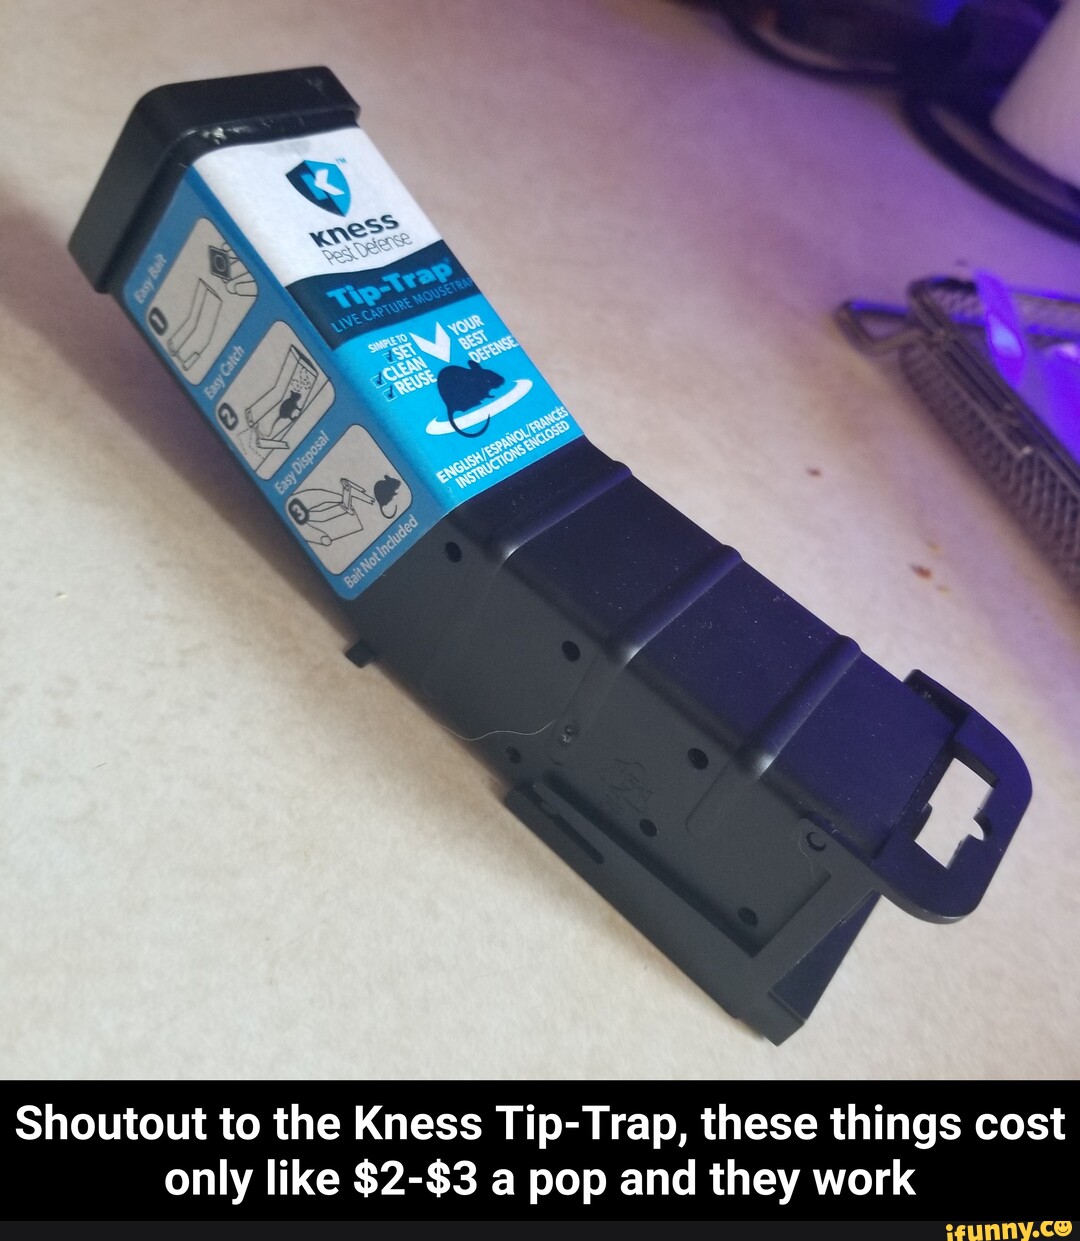 Kness Tip-Trap Live Capture Mousetrap